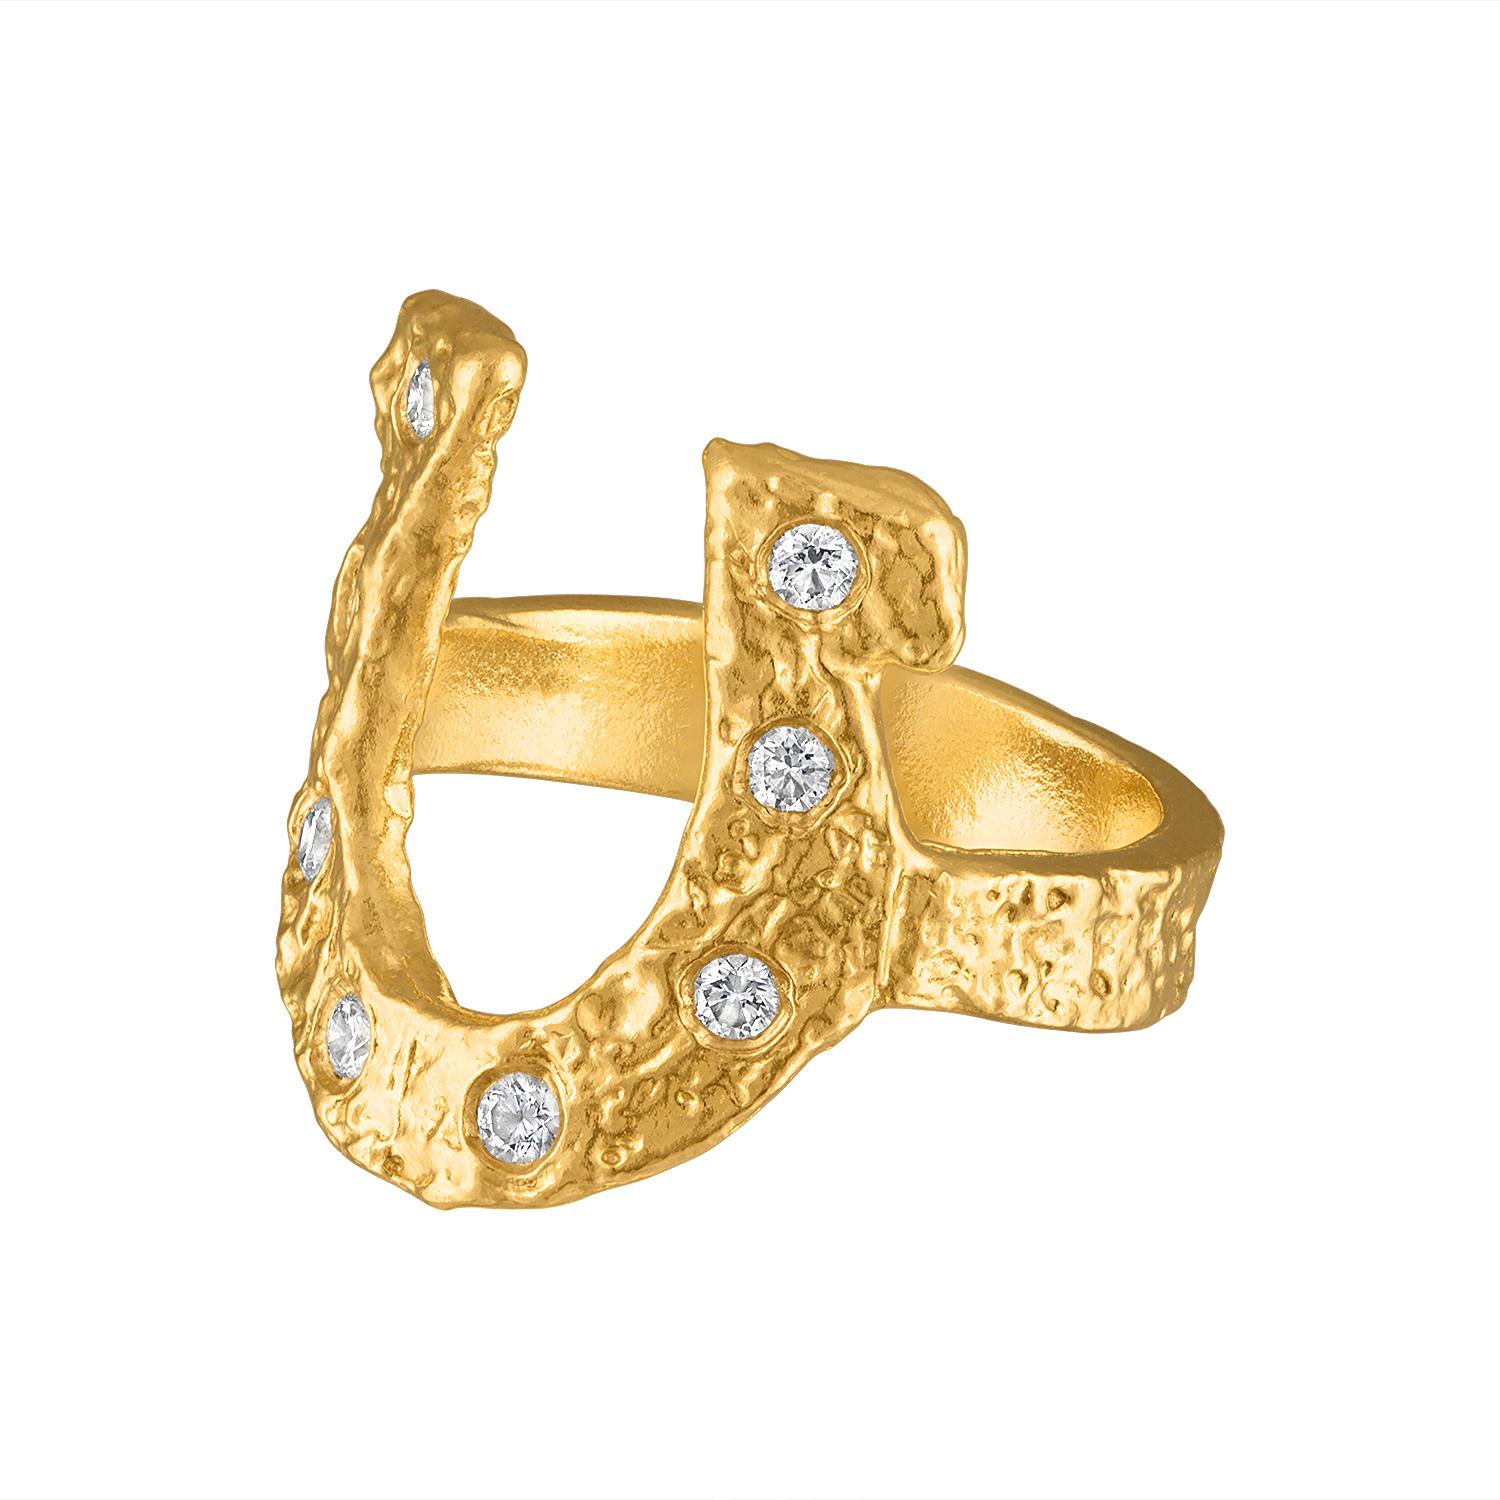 Ziehen Sie die Blicke auf sich mit diesem schillernden Hufeisenring aus 22 Karat Gold, der mit acht 1,9 mm großen strahlenden Diamanten besetzt ist. Der hohe Goldanteil fängt das Licht ein, während die Diamanten ein faszinierendes Funkeln erzeugen.